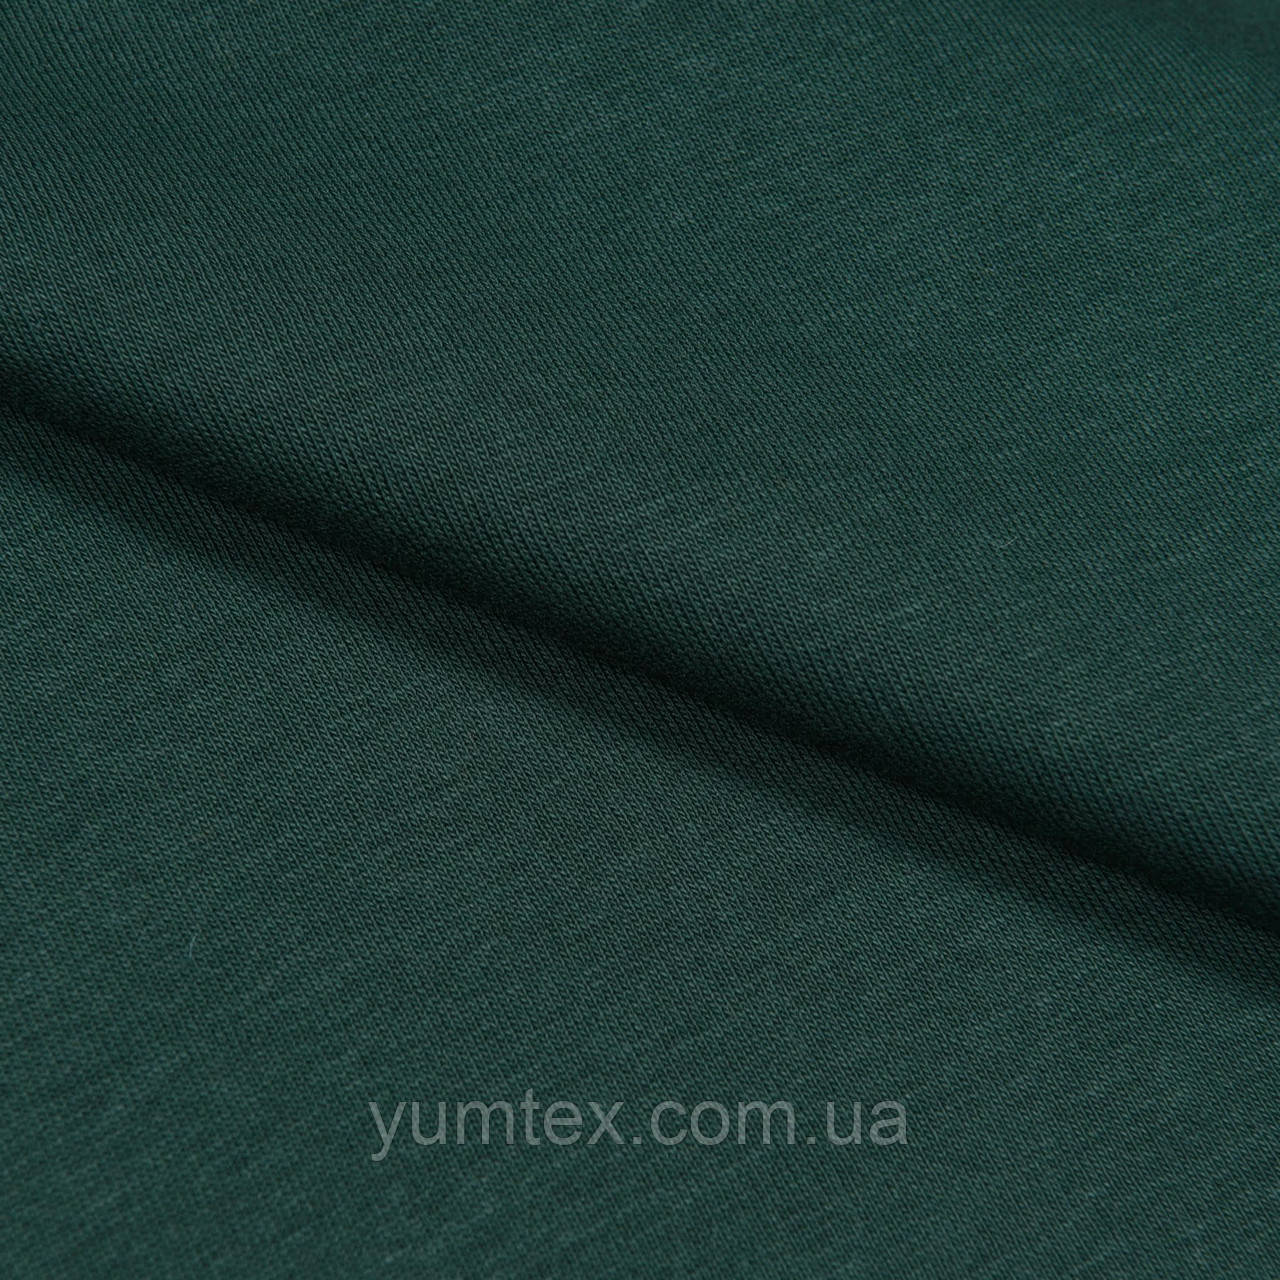 Тканина футер тринитка з начосом для костюмів спортивного одягу футболок спідниць суконь темно-зелена